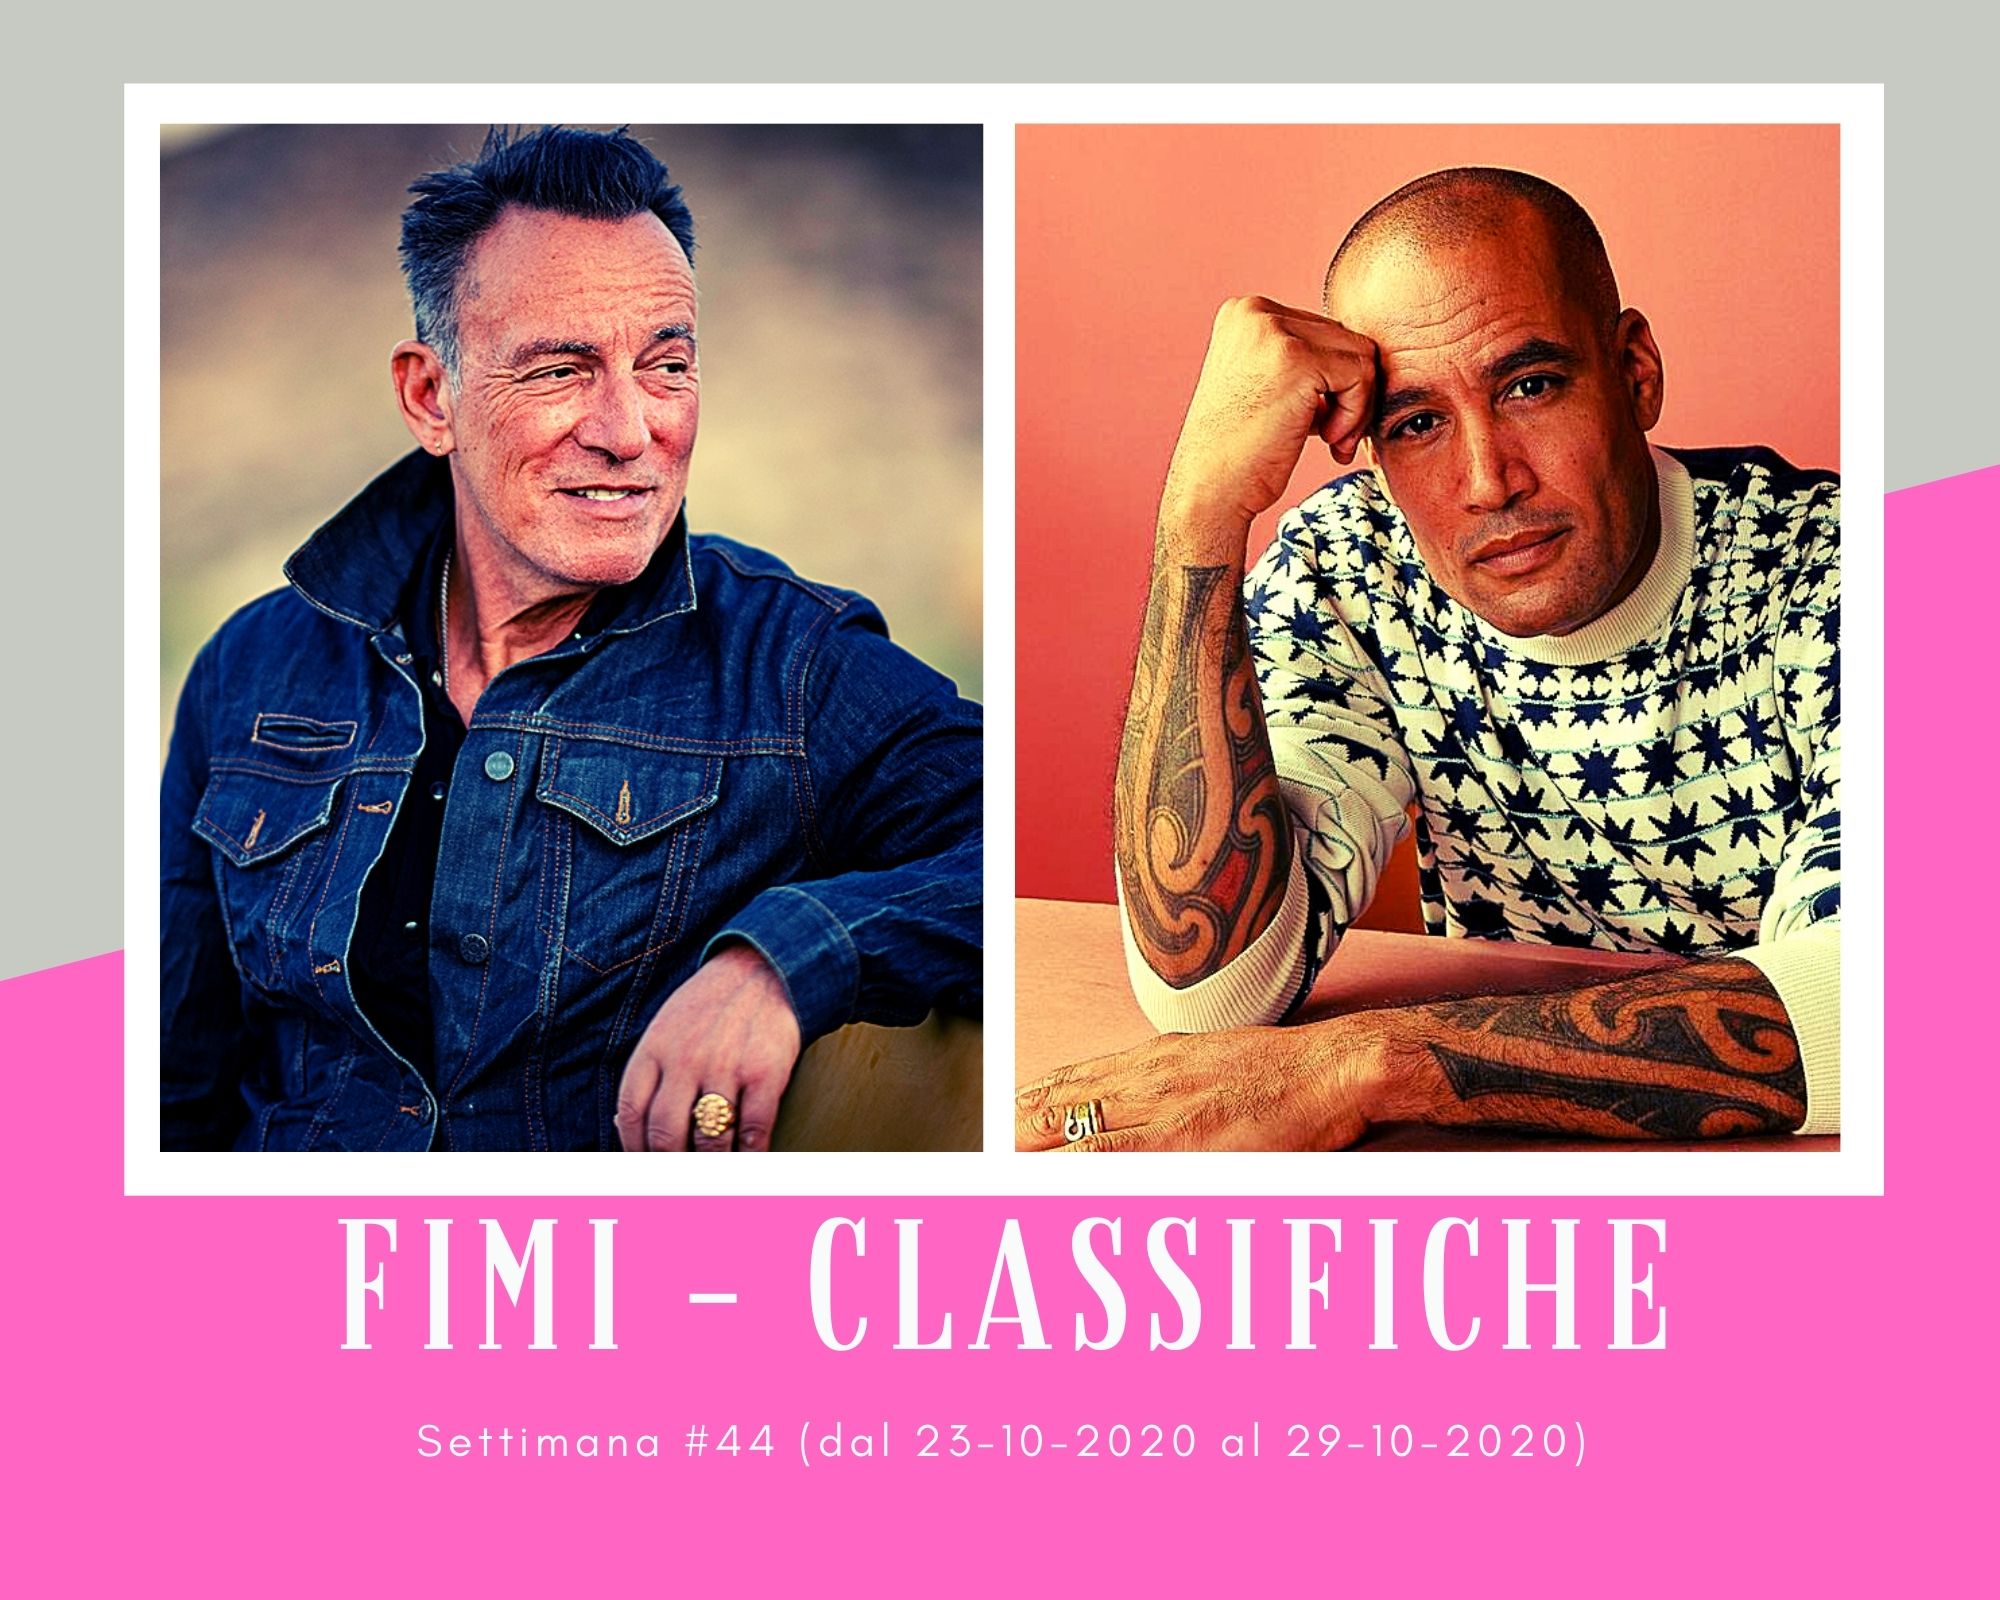 Classifiche FIMI, week 44. Con Bruce Springsteen e Ben Harper sventola bandiera Usa